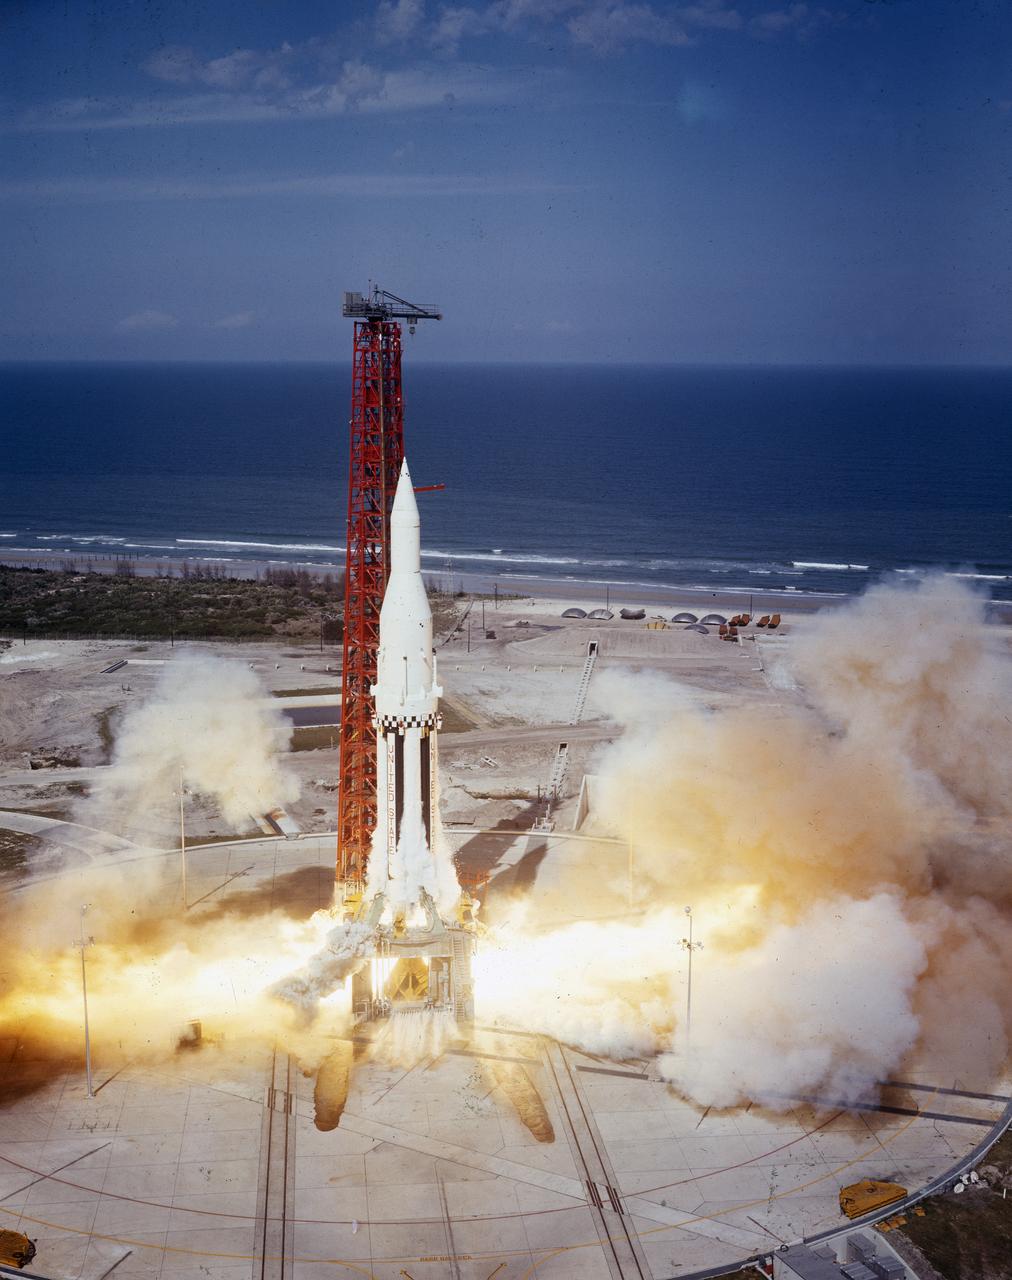 Quarto voo de teste (SA-4) do foguete Saturn I, em 28/mar/1963, como parte do Programa Apollo.